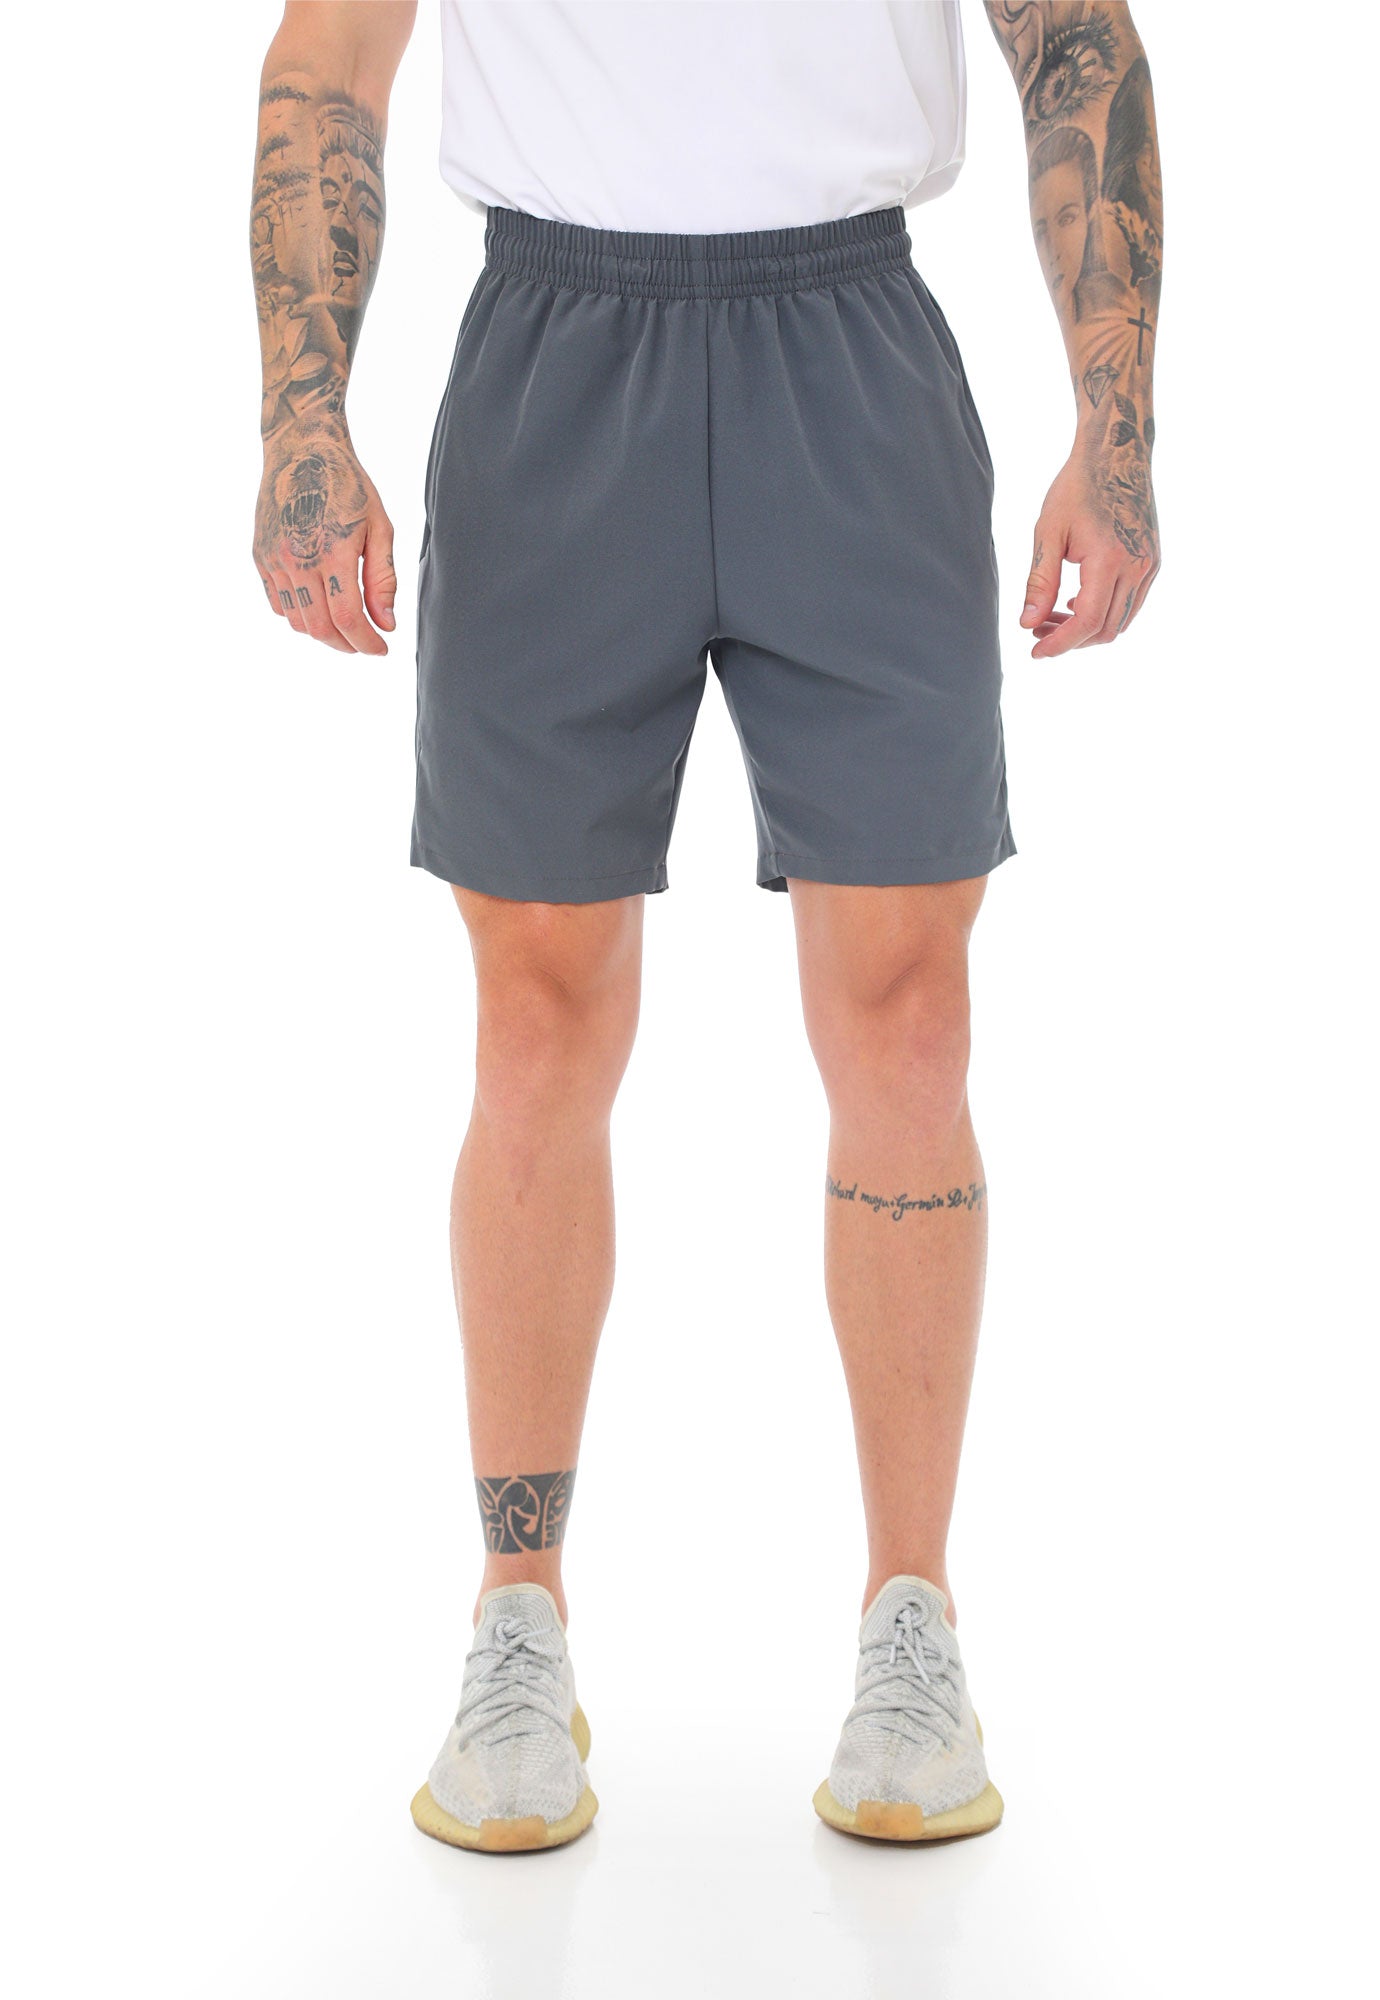 Pantaloneta deportiva gris con bloques laterales y ciclista interno para hombre